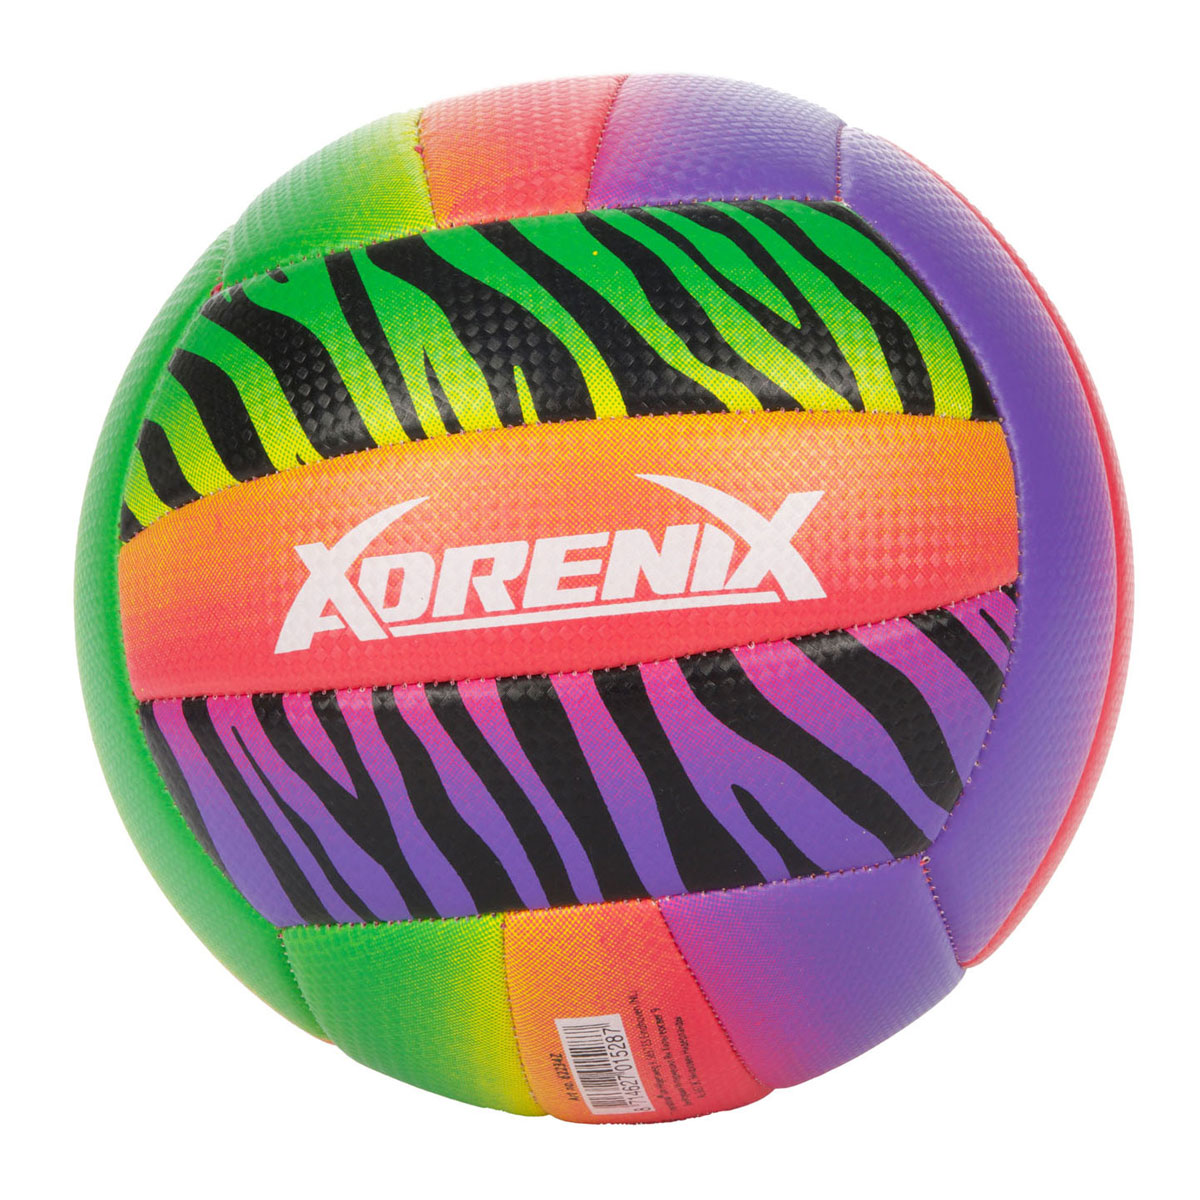 Ballon de beach-volley Adrenix, taille 5